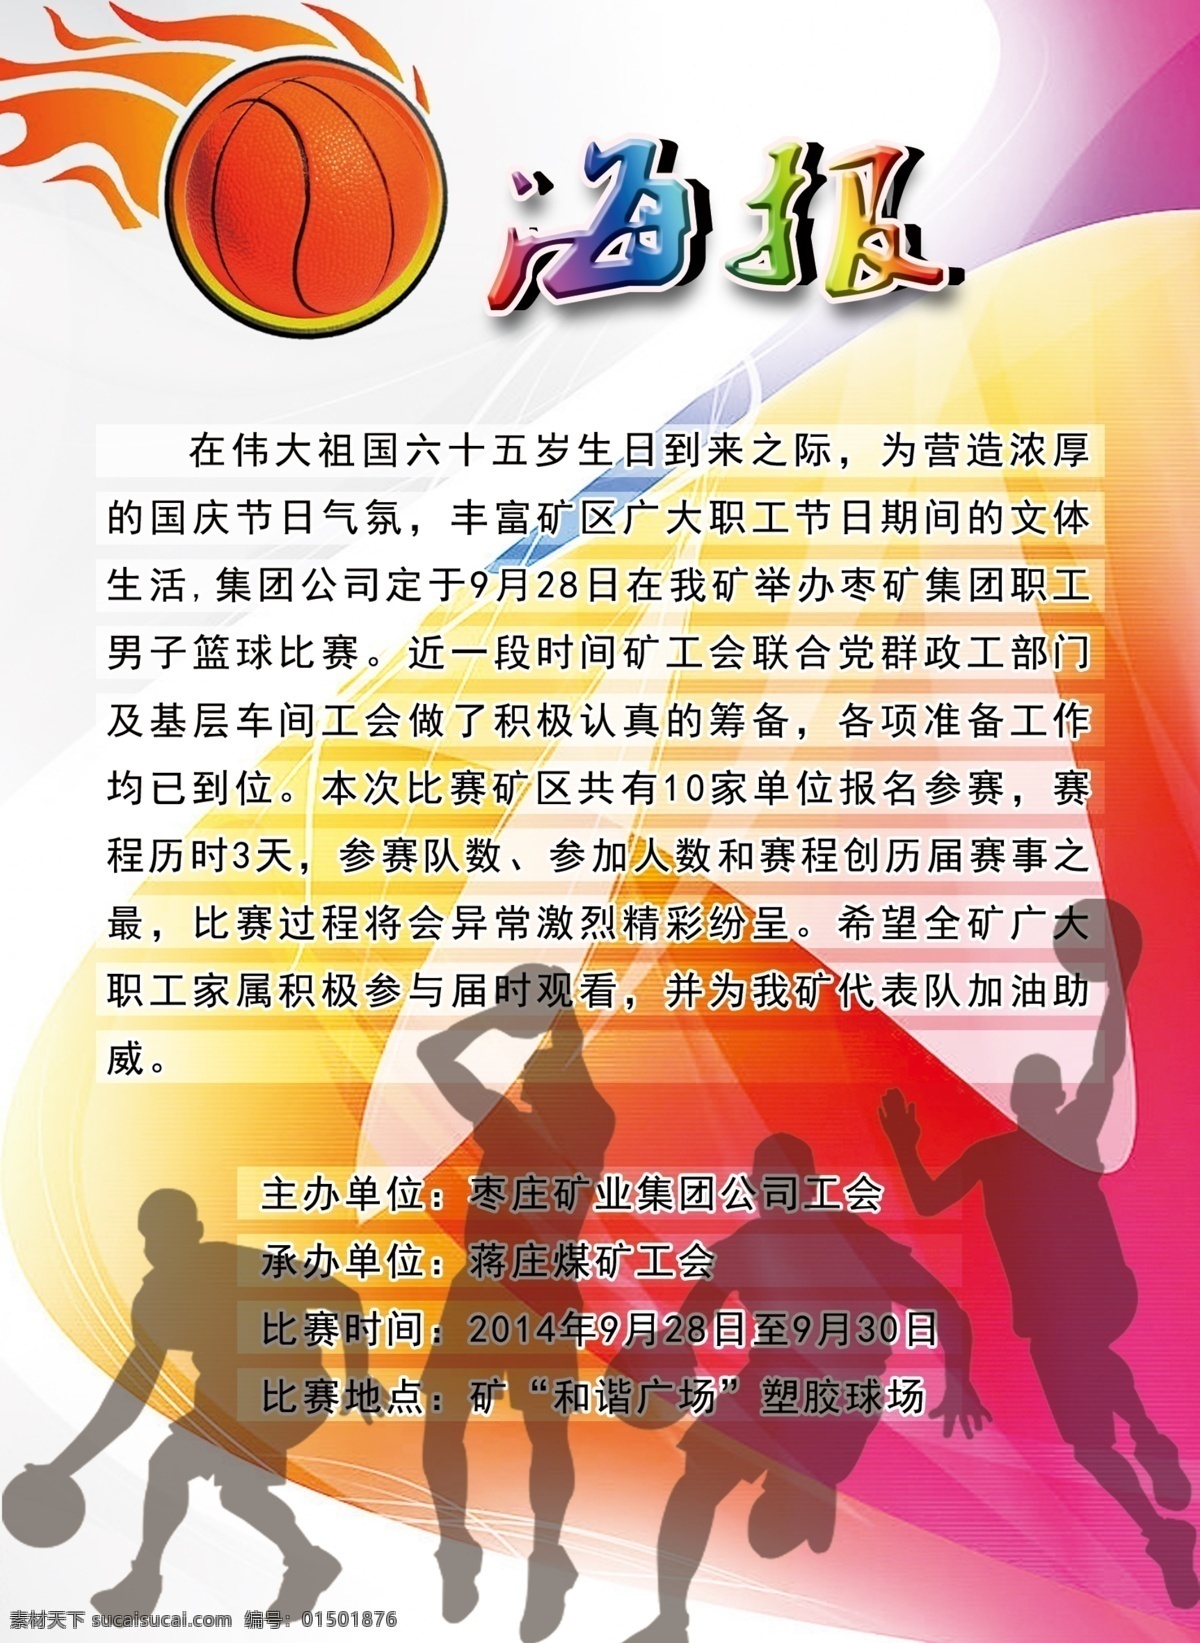 篮球赛海报 海报 球赛通知 篮球赛招贴画 球赛海报 篮球赛